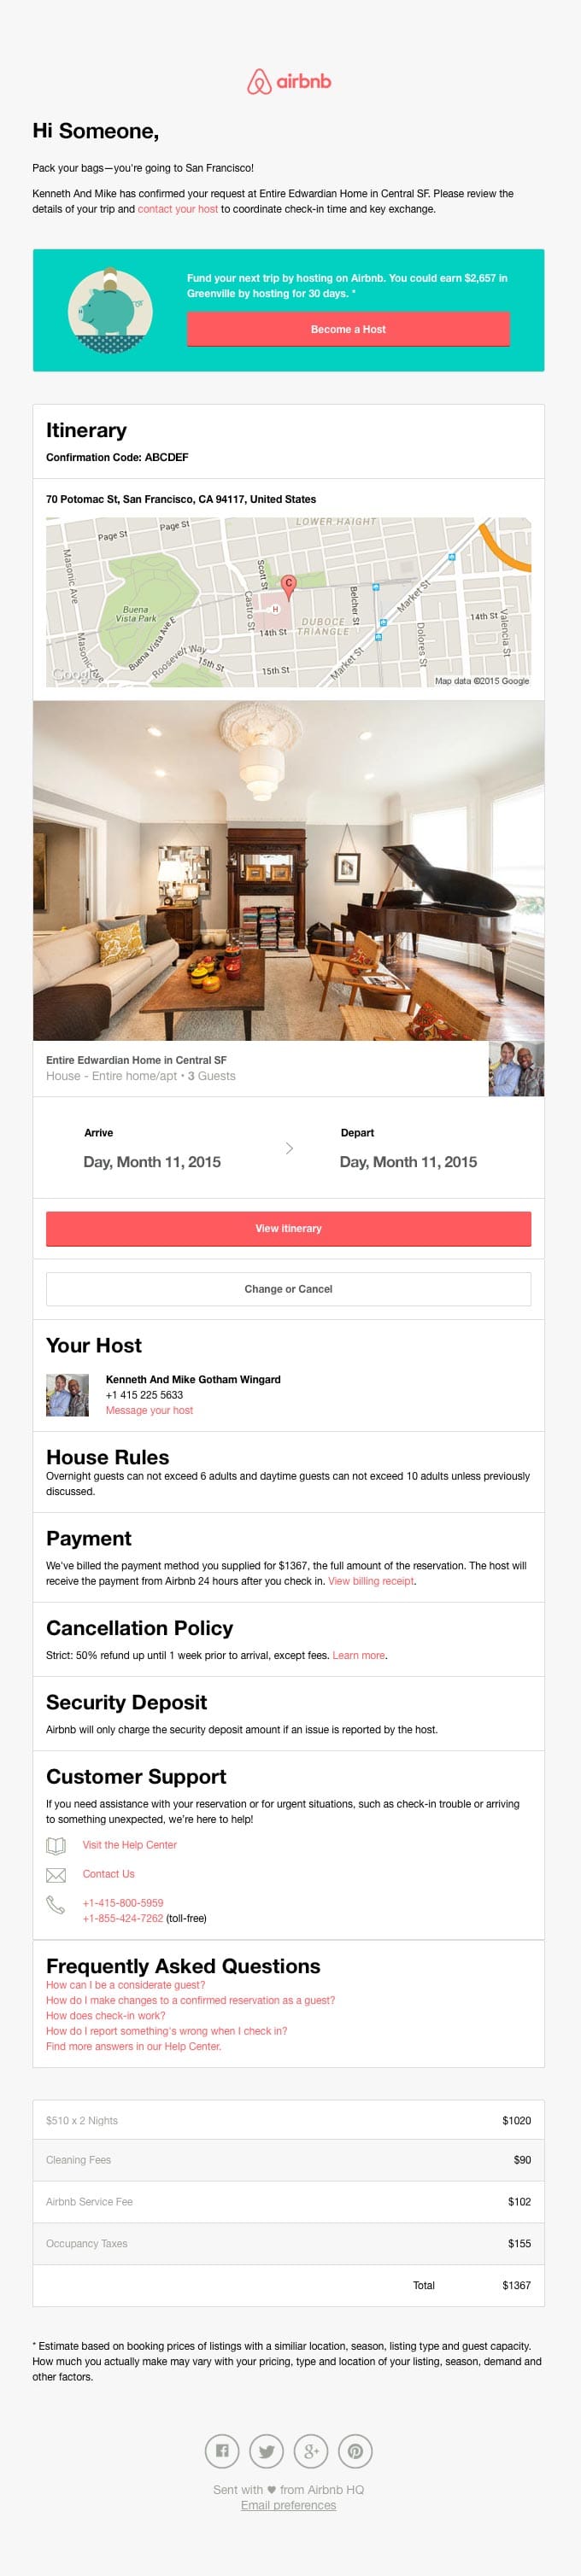 Airbnb receipt